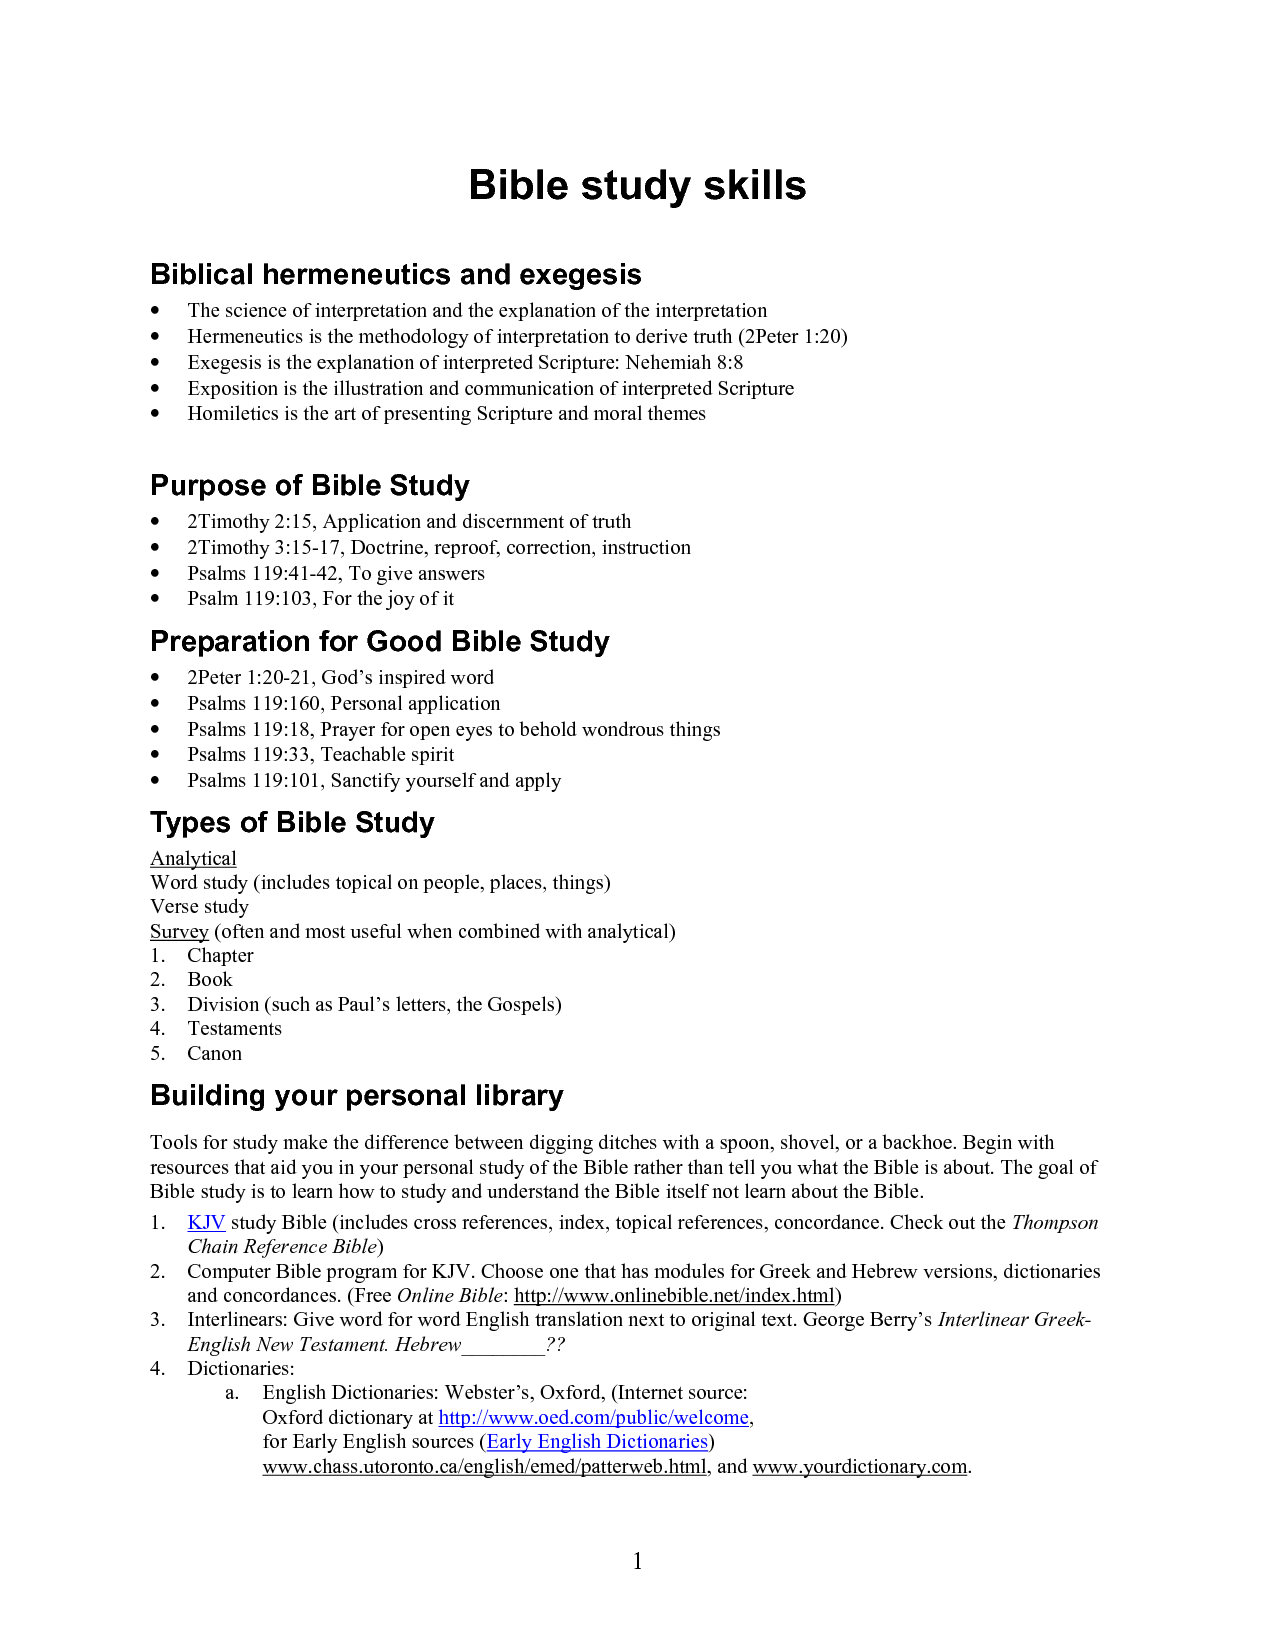 Bible Study Worksheets For Adults Printable Youth Lessons Free And - Bible Lessons For Adults Free Printable